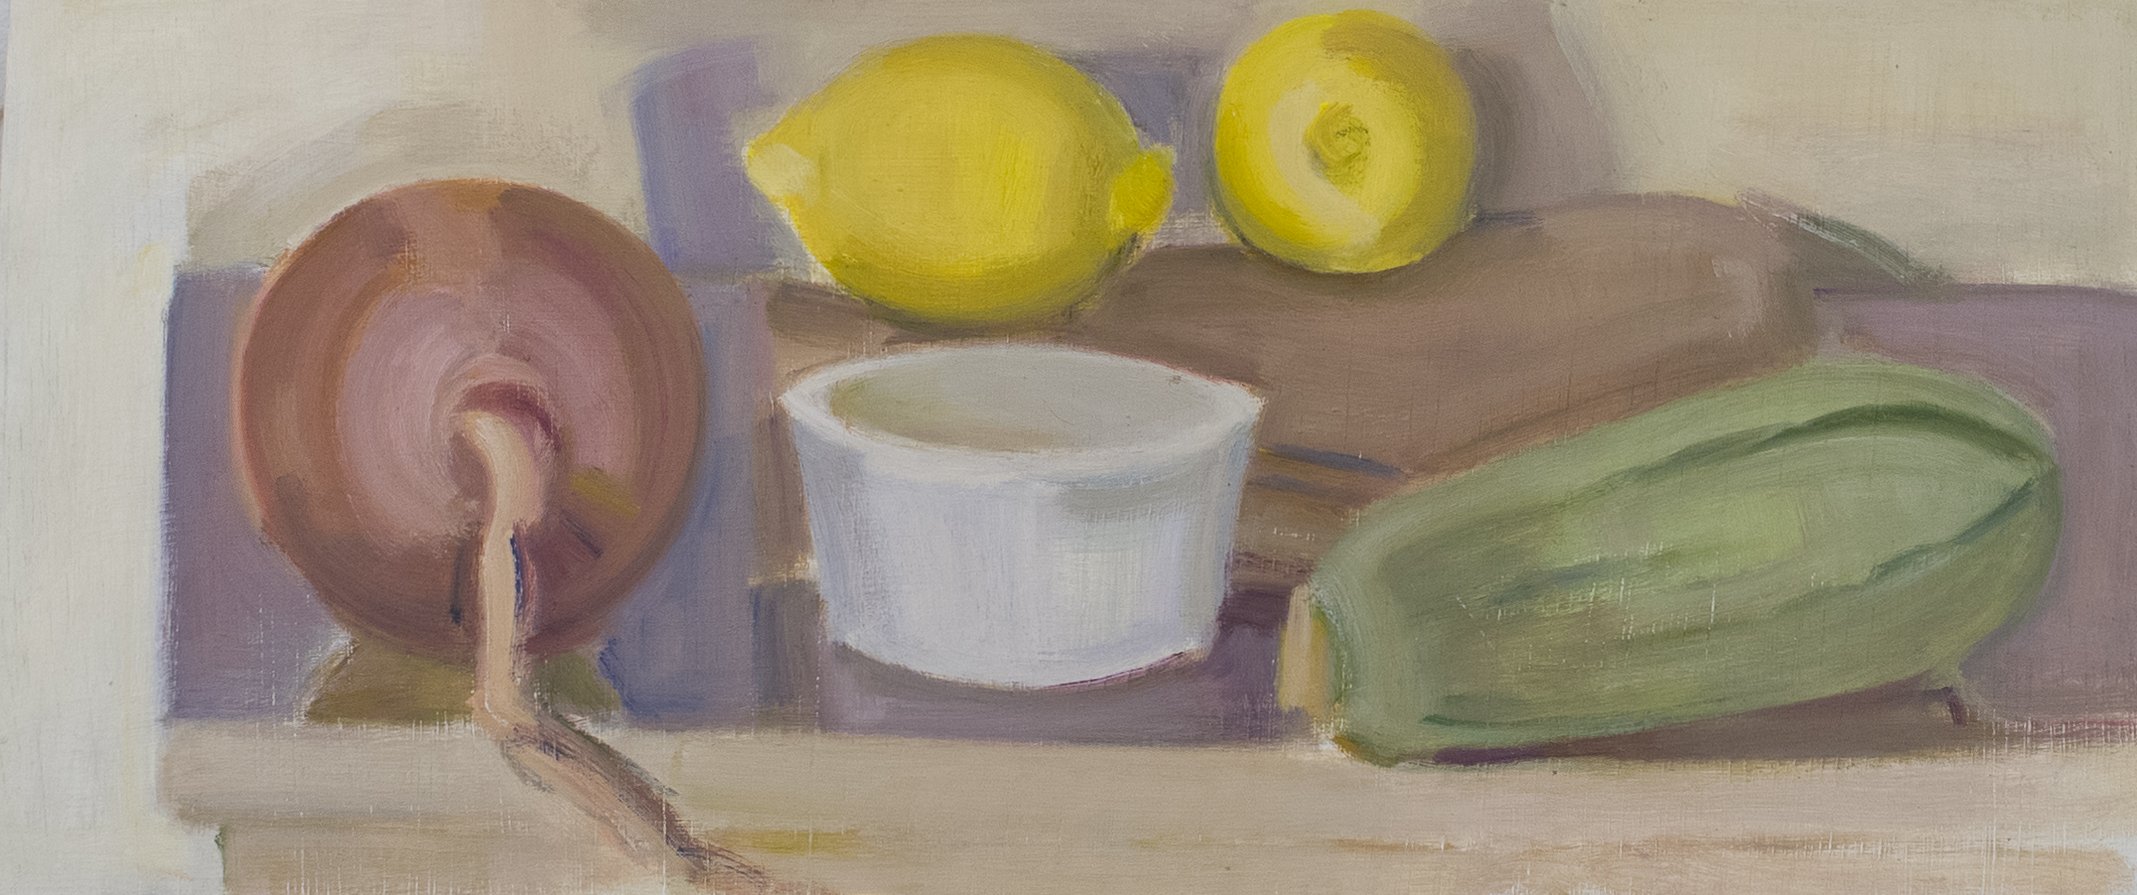   Onion, Ramekin, Lemon, Squash , 2020, oil/panel, 7 x 16 in.  (Private collection)  